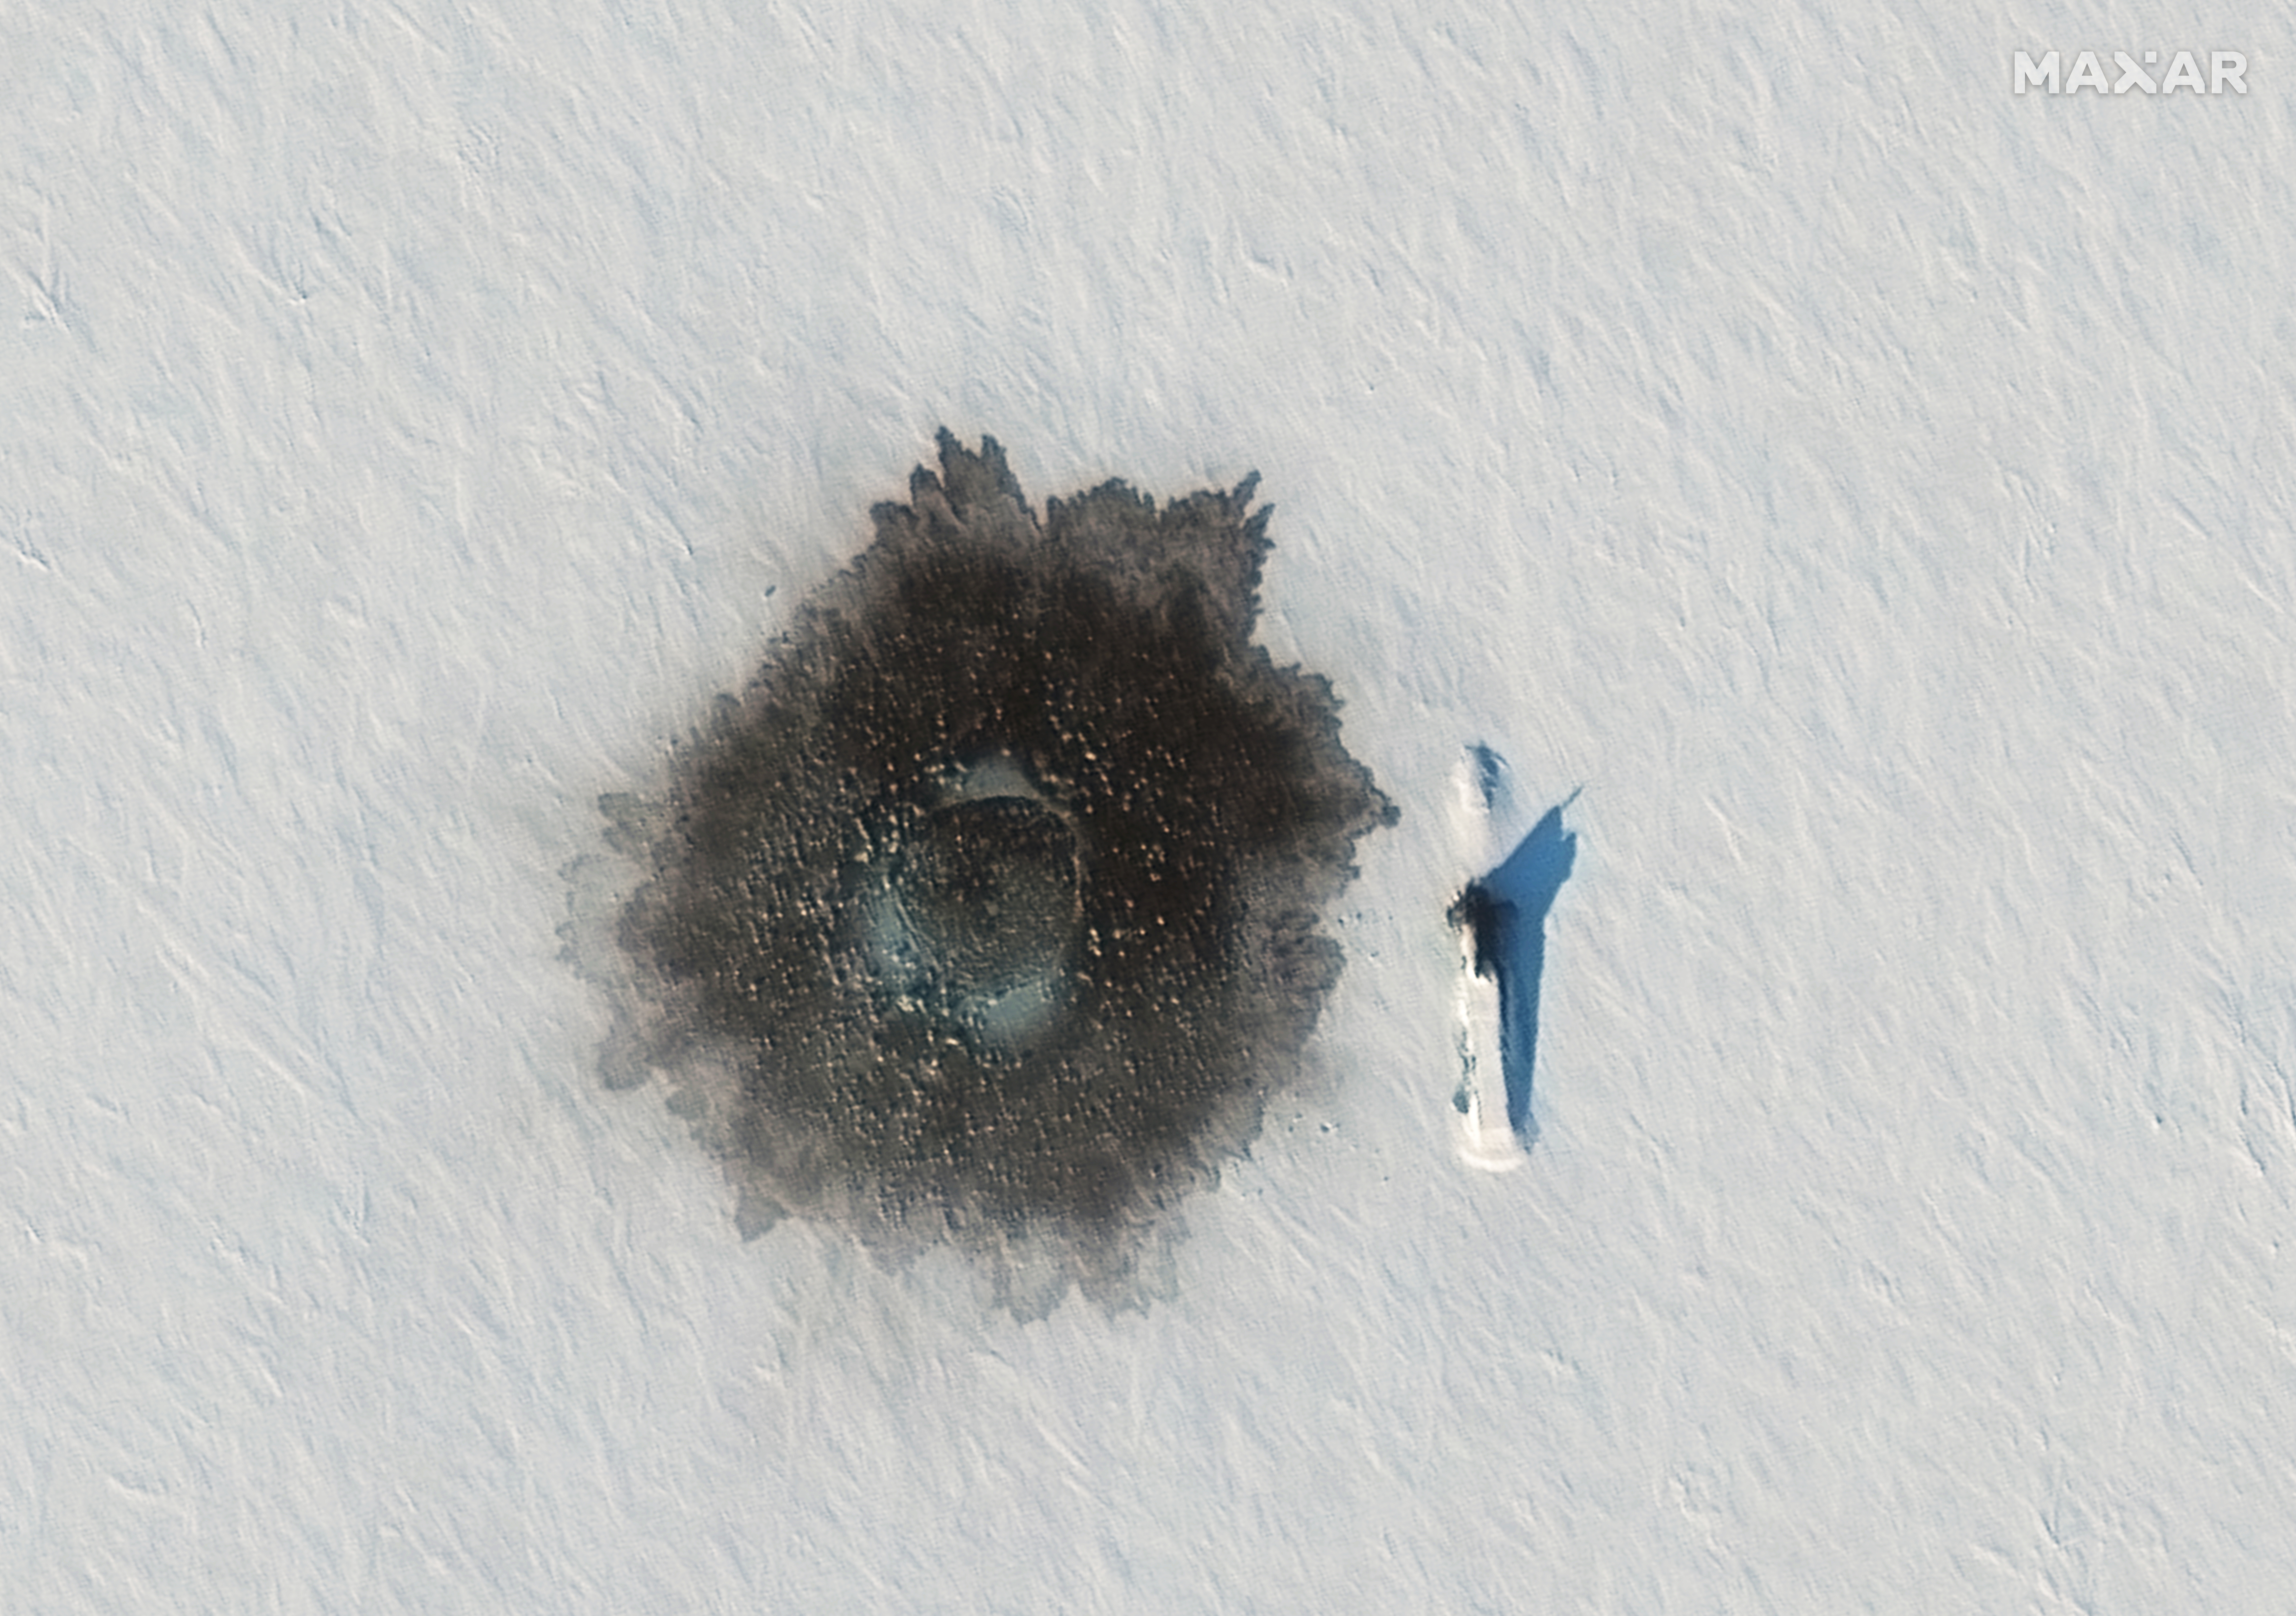 Los submarinos nucleares rusos emergiendo desde el hielo durante los recientes ejercicios militares en el Ártico (©2021 Maxar Technologies via REUTERS)